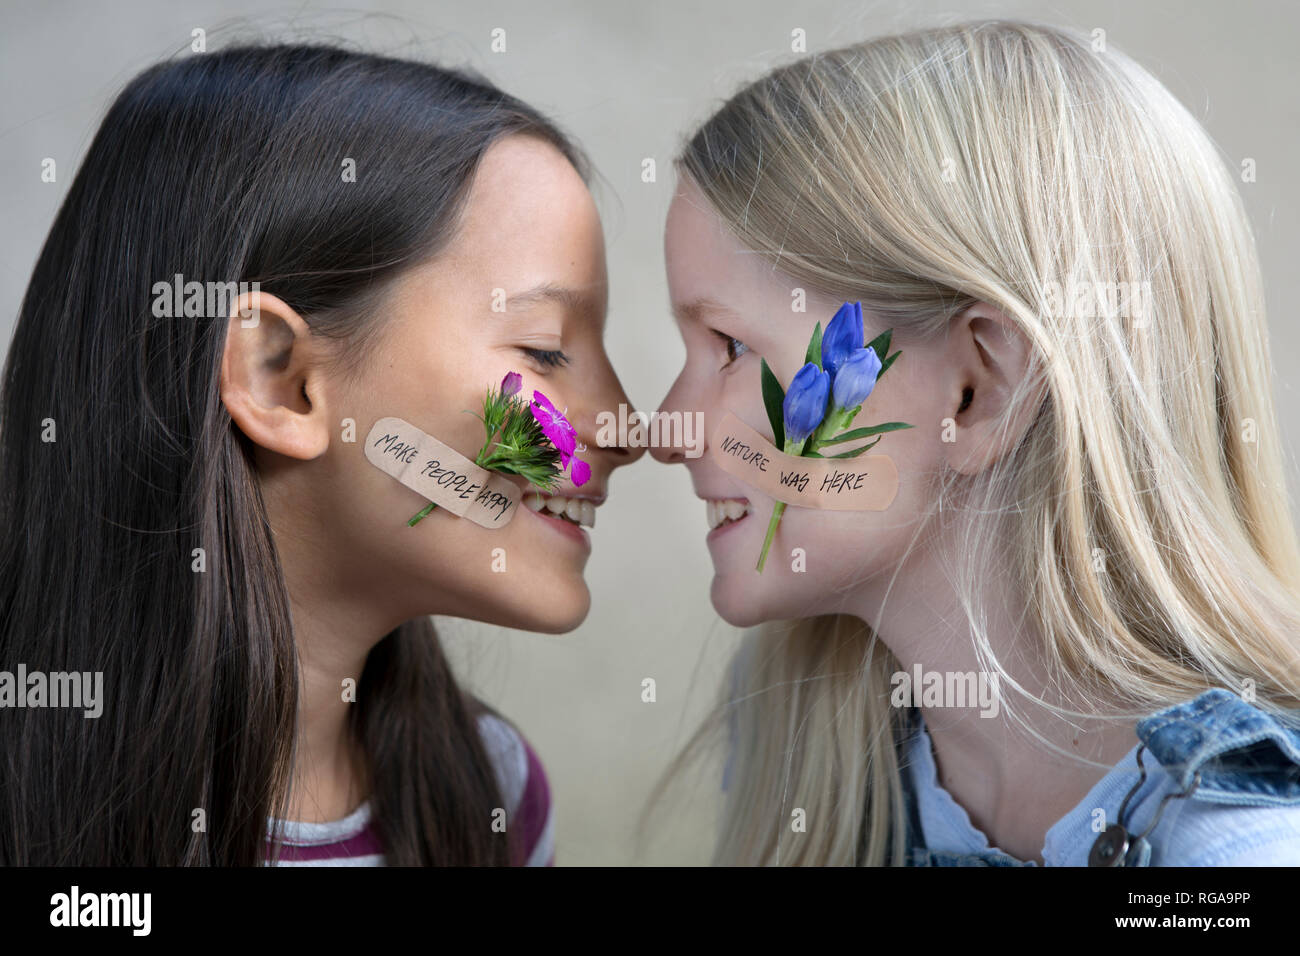 Profili di due ragazze sorridenti con le teste dei fiori sulle loro guance Foto Stock